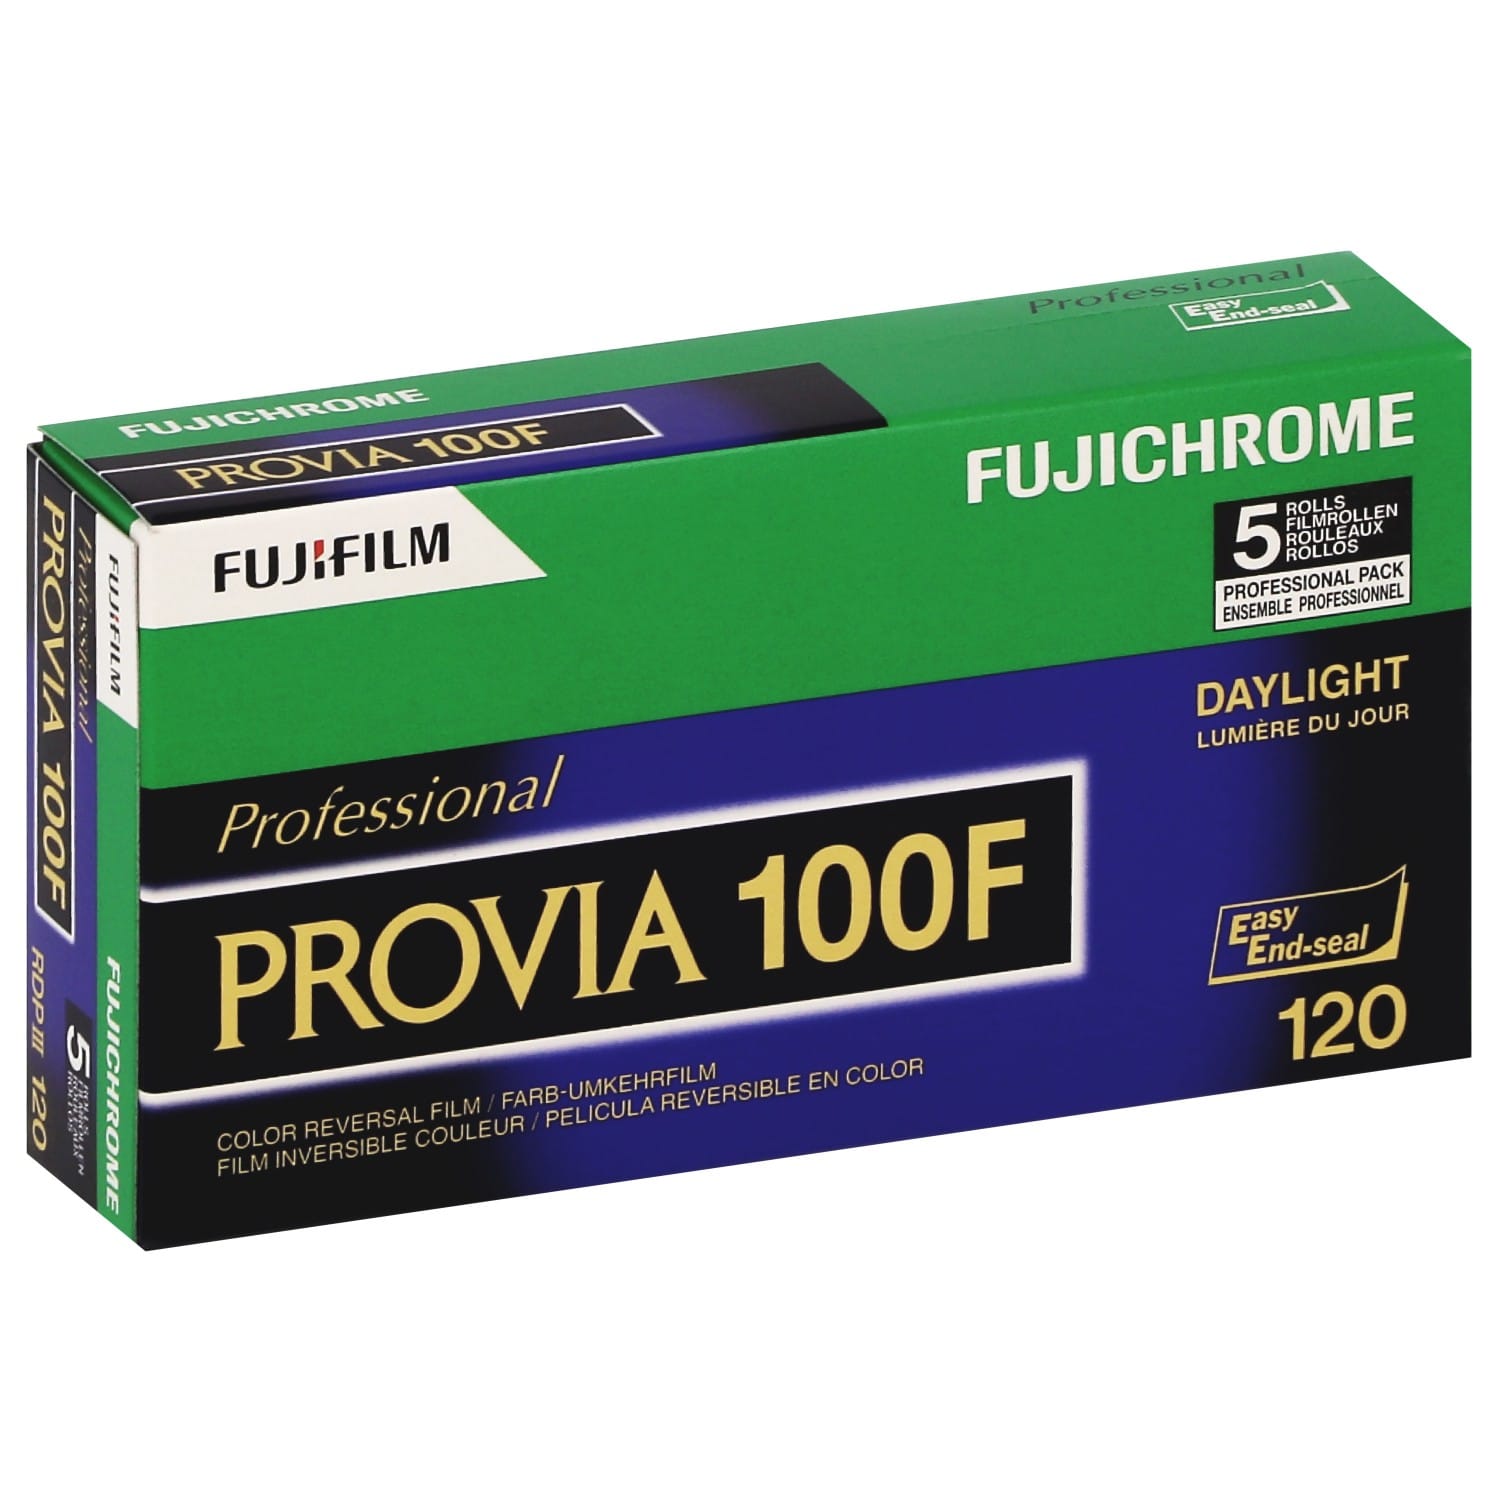 Film inversible FUJI couleur Fujichrome PROVIA 100F RDPIII Format 120 - Pack de 5